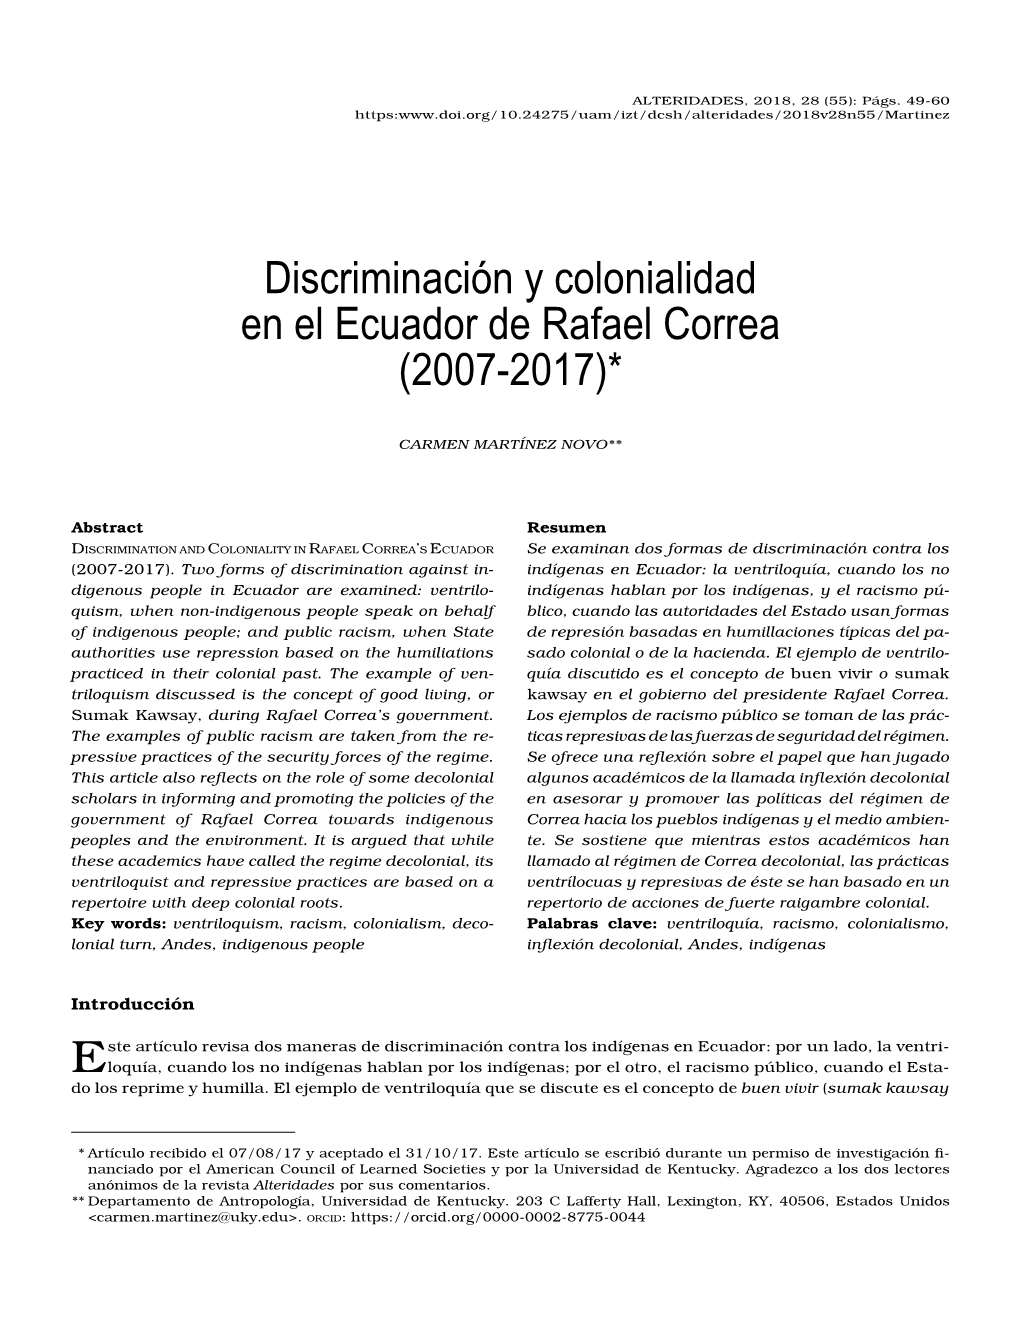 Discriminación Y Colonialidad En El Ecuador De Rafael Correa (2007-2017)*